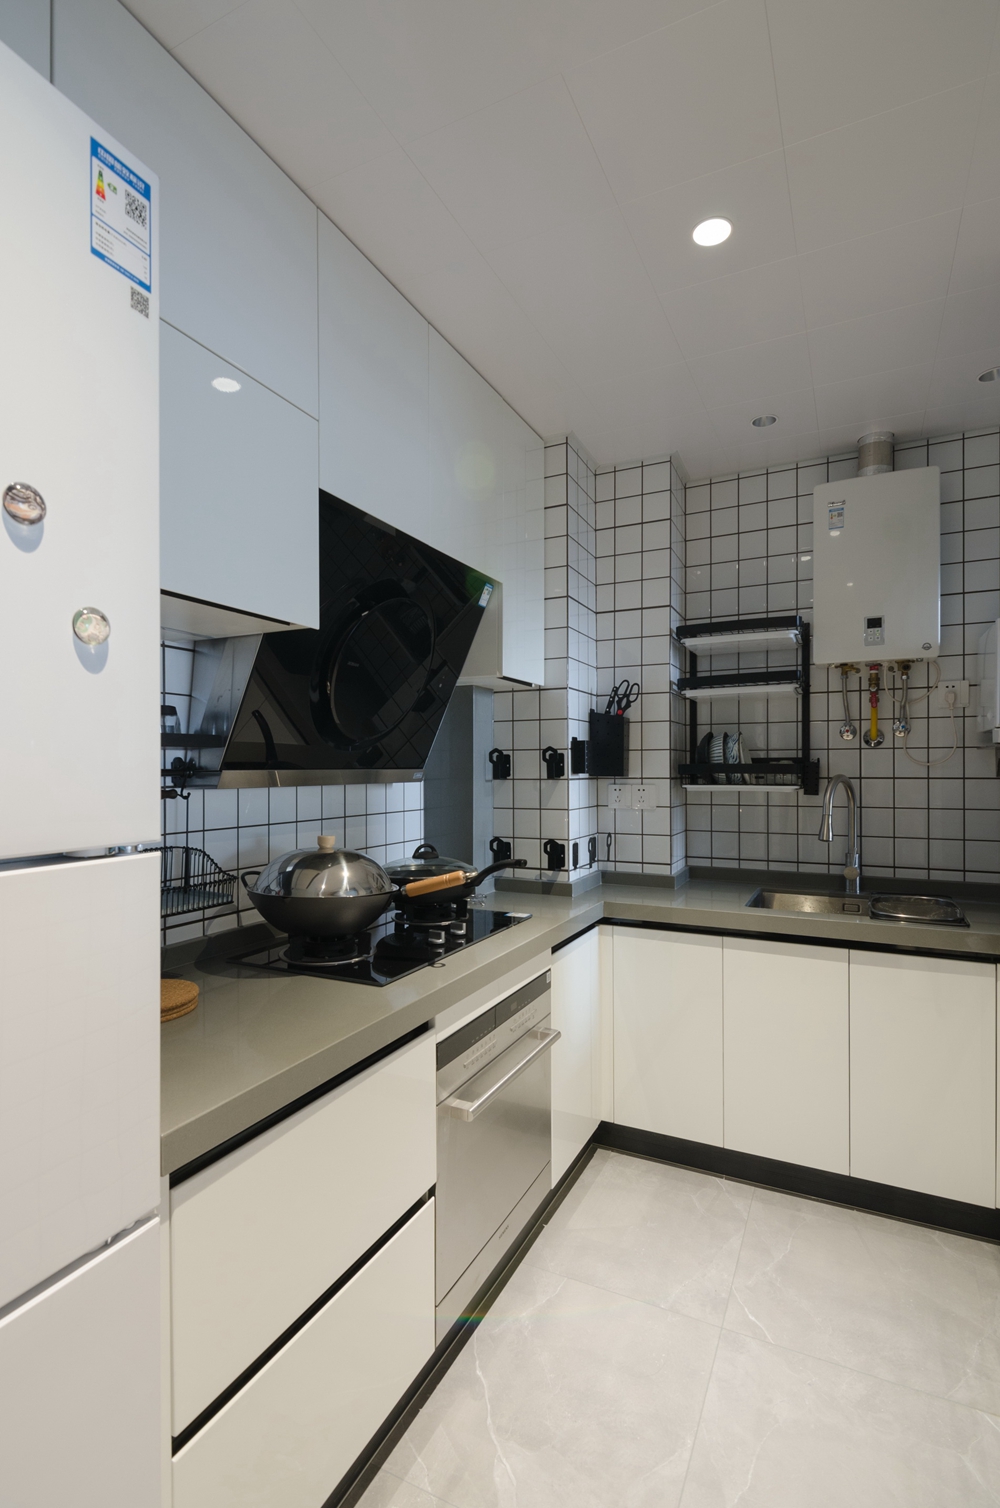 白色橱柜在方形瓷砖的烘托下，显得清新时尚，厨房动线设计合理，视觉效果干净有序。